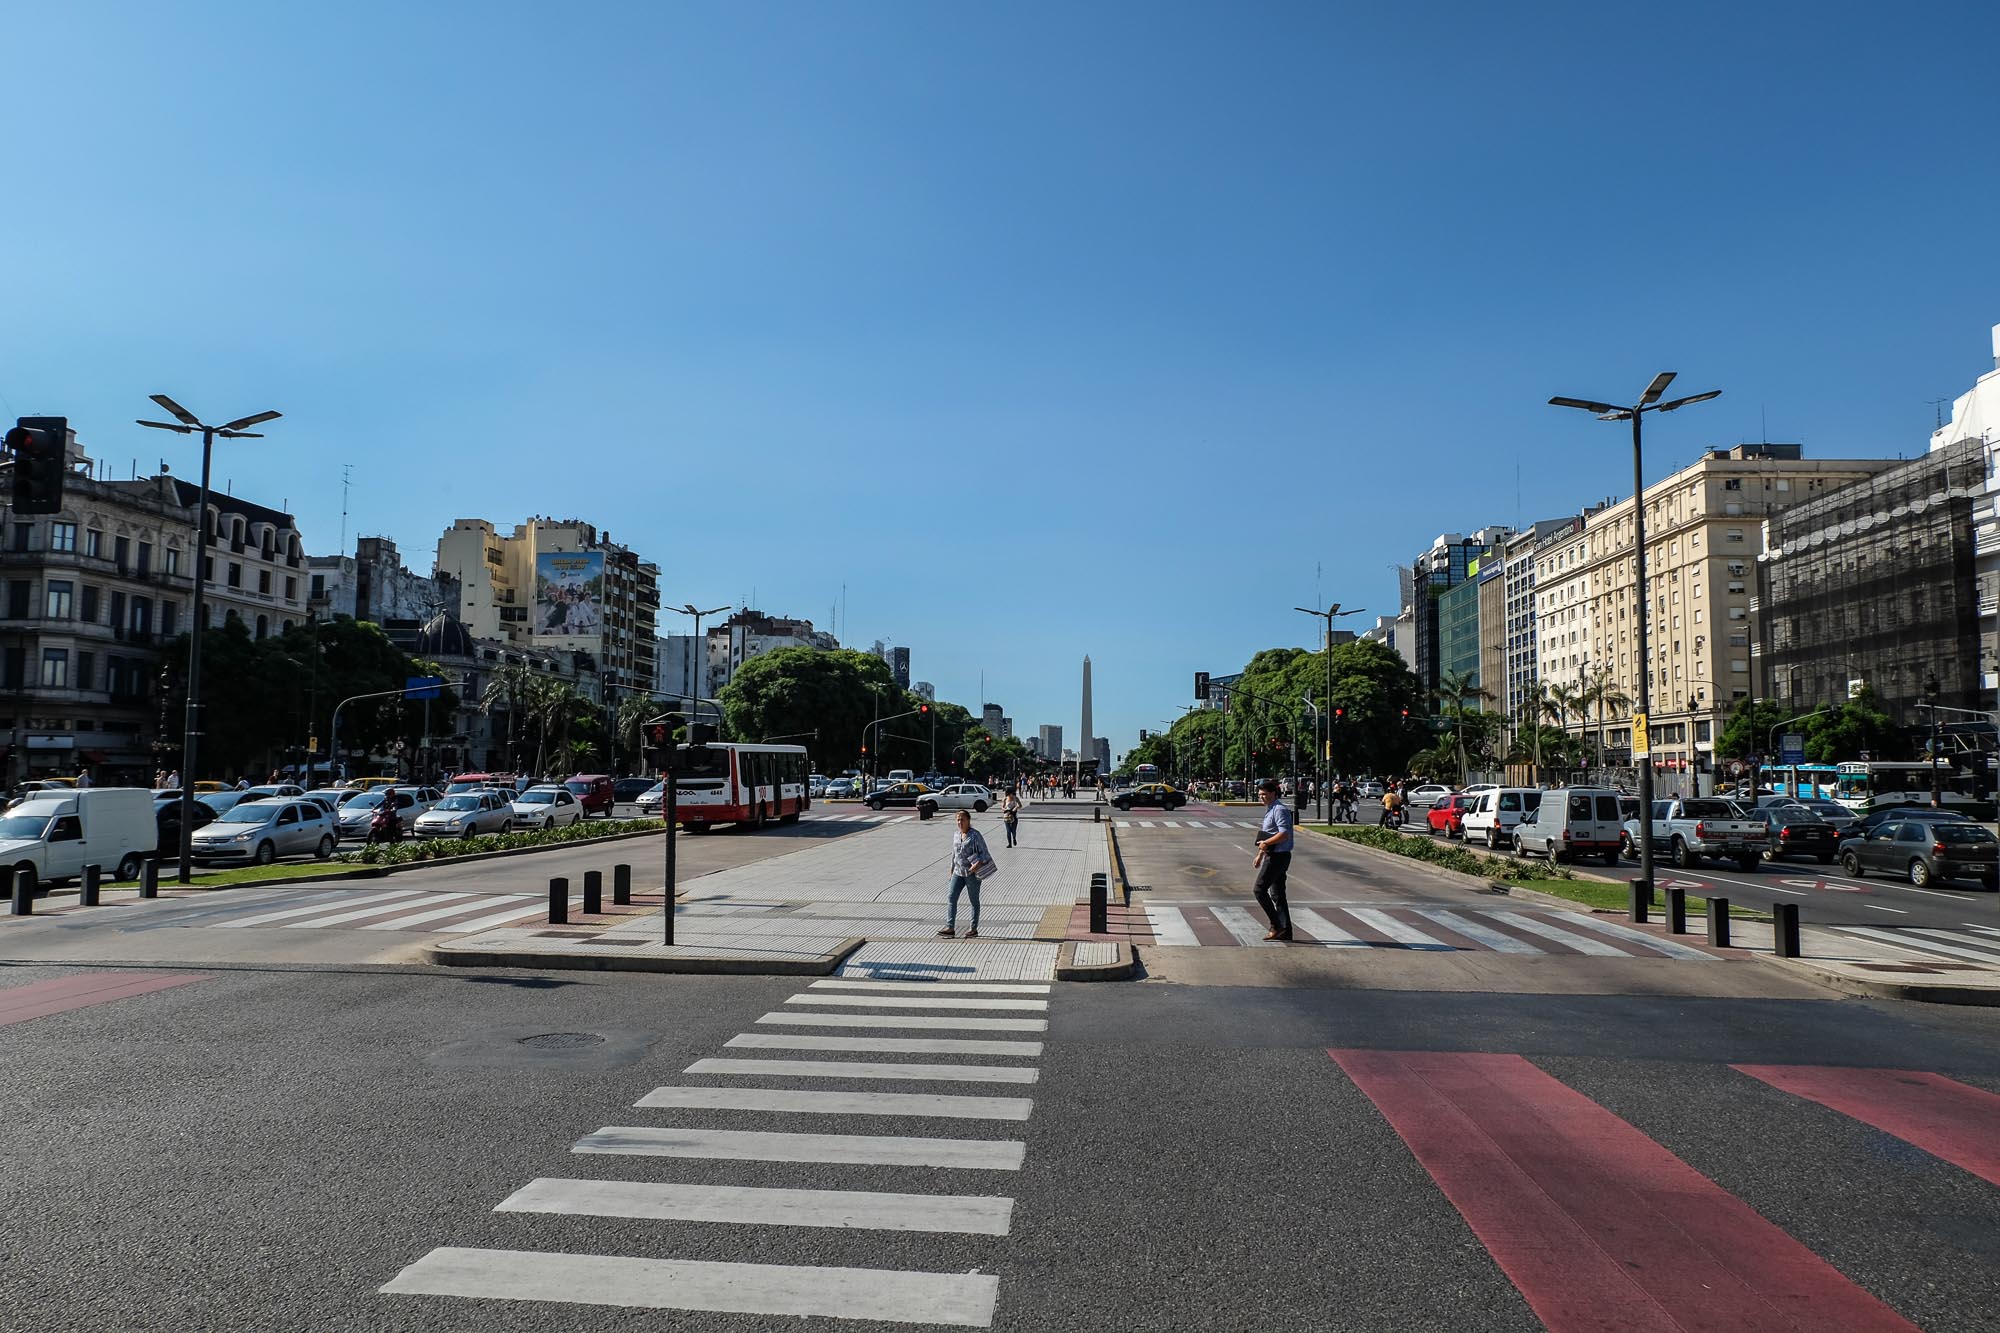 Avenida 9 de Junio ist die breiteste Avenida der Welt (ca. 130 m). Unglaubliche 20 Fahrspuren habe ich gezählt.